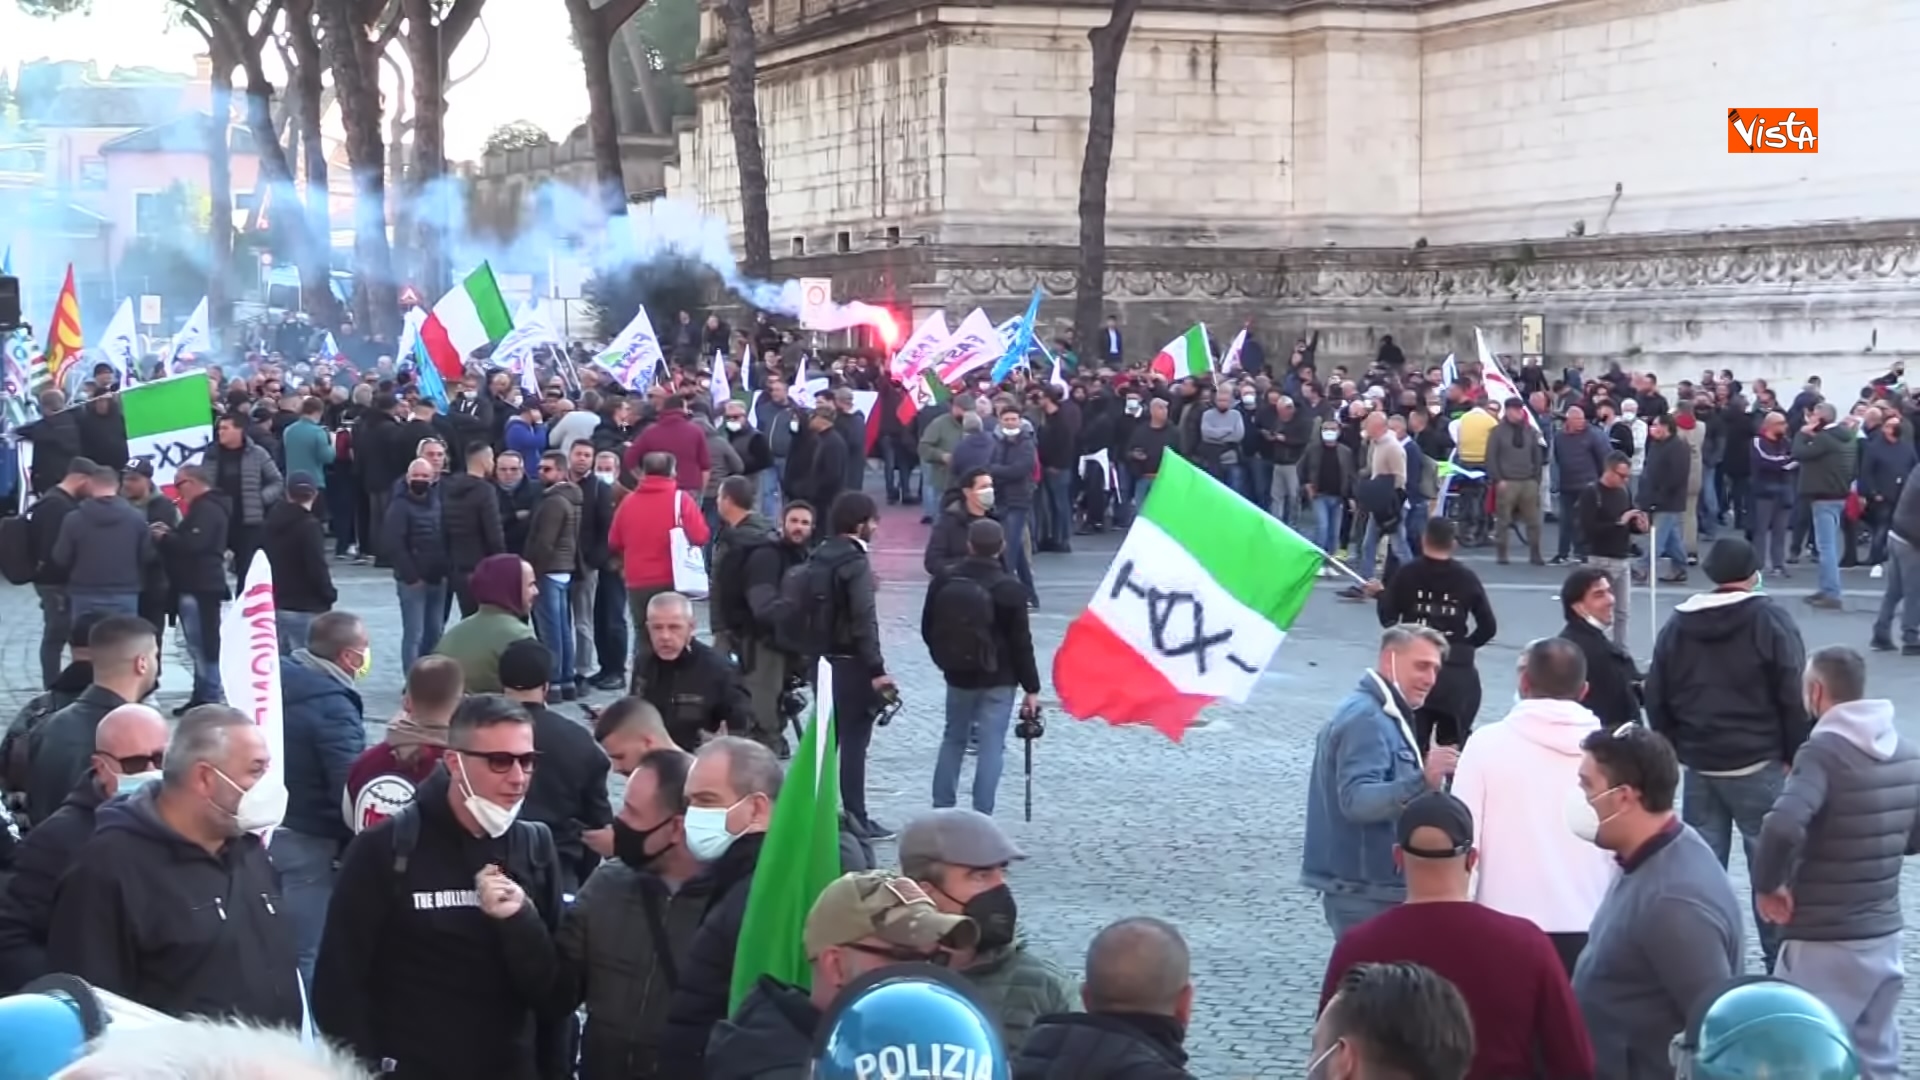 24-11-21 Protesta dei tassisti a Roma contro il Ddl concorrenza le immagini_05